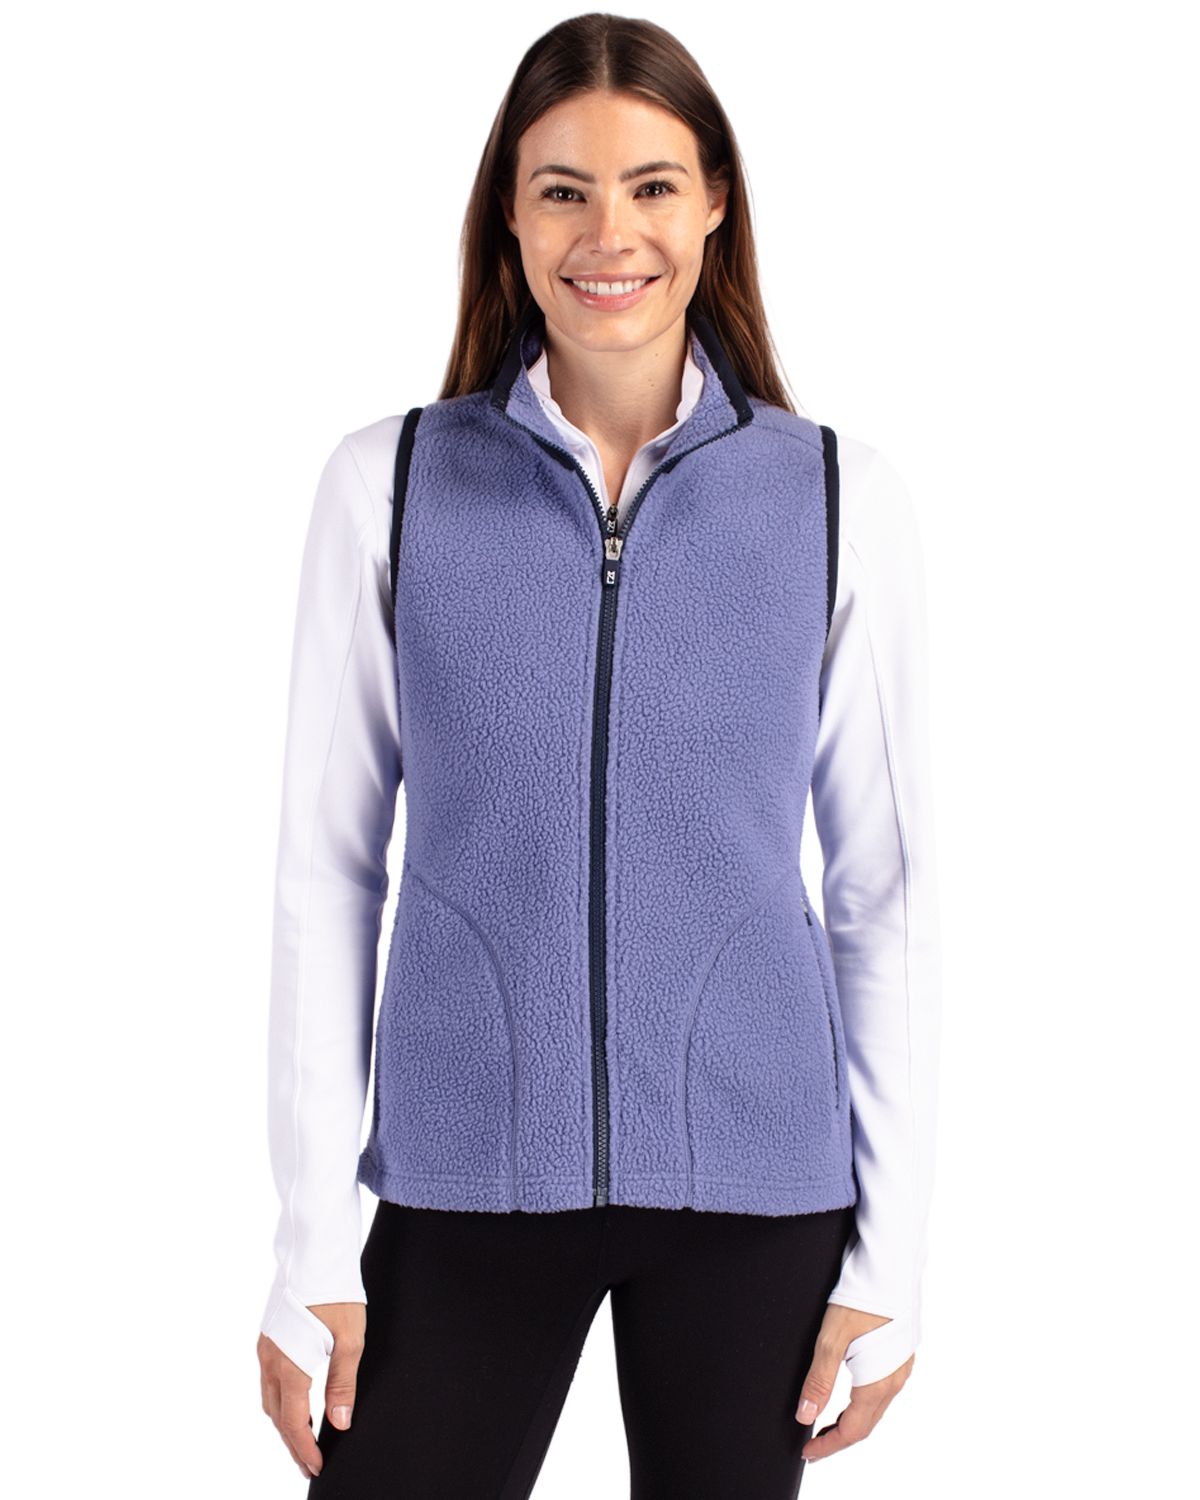 Cascade Eco Sherpa Fleece Womens Plus Size Vest - Shell/navy blue